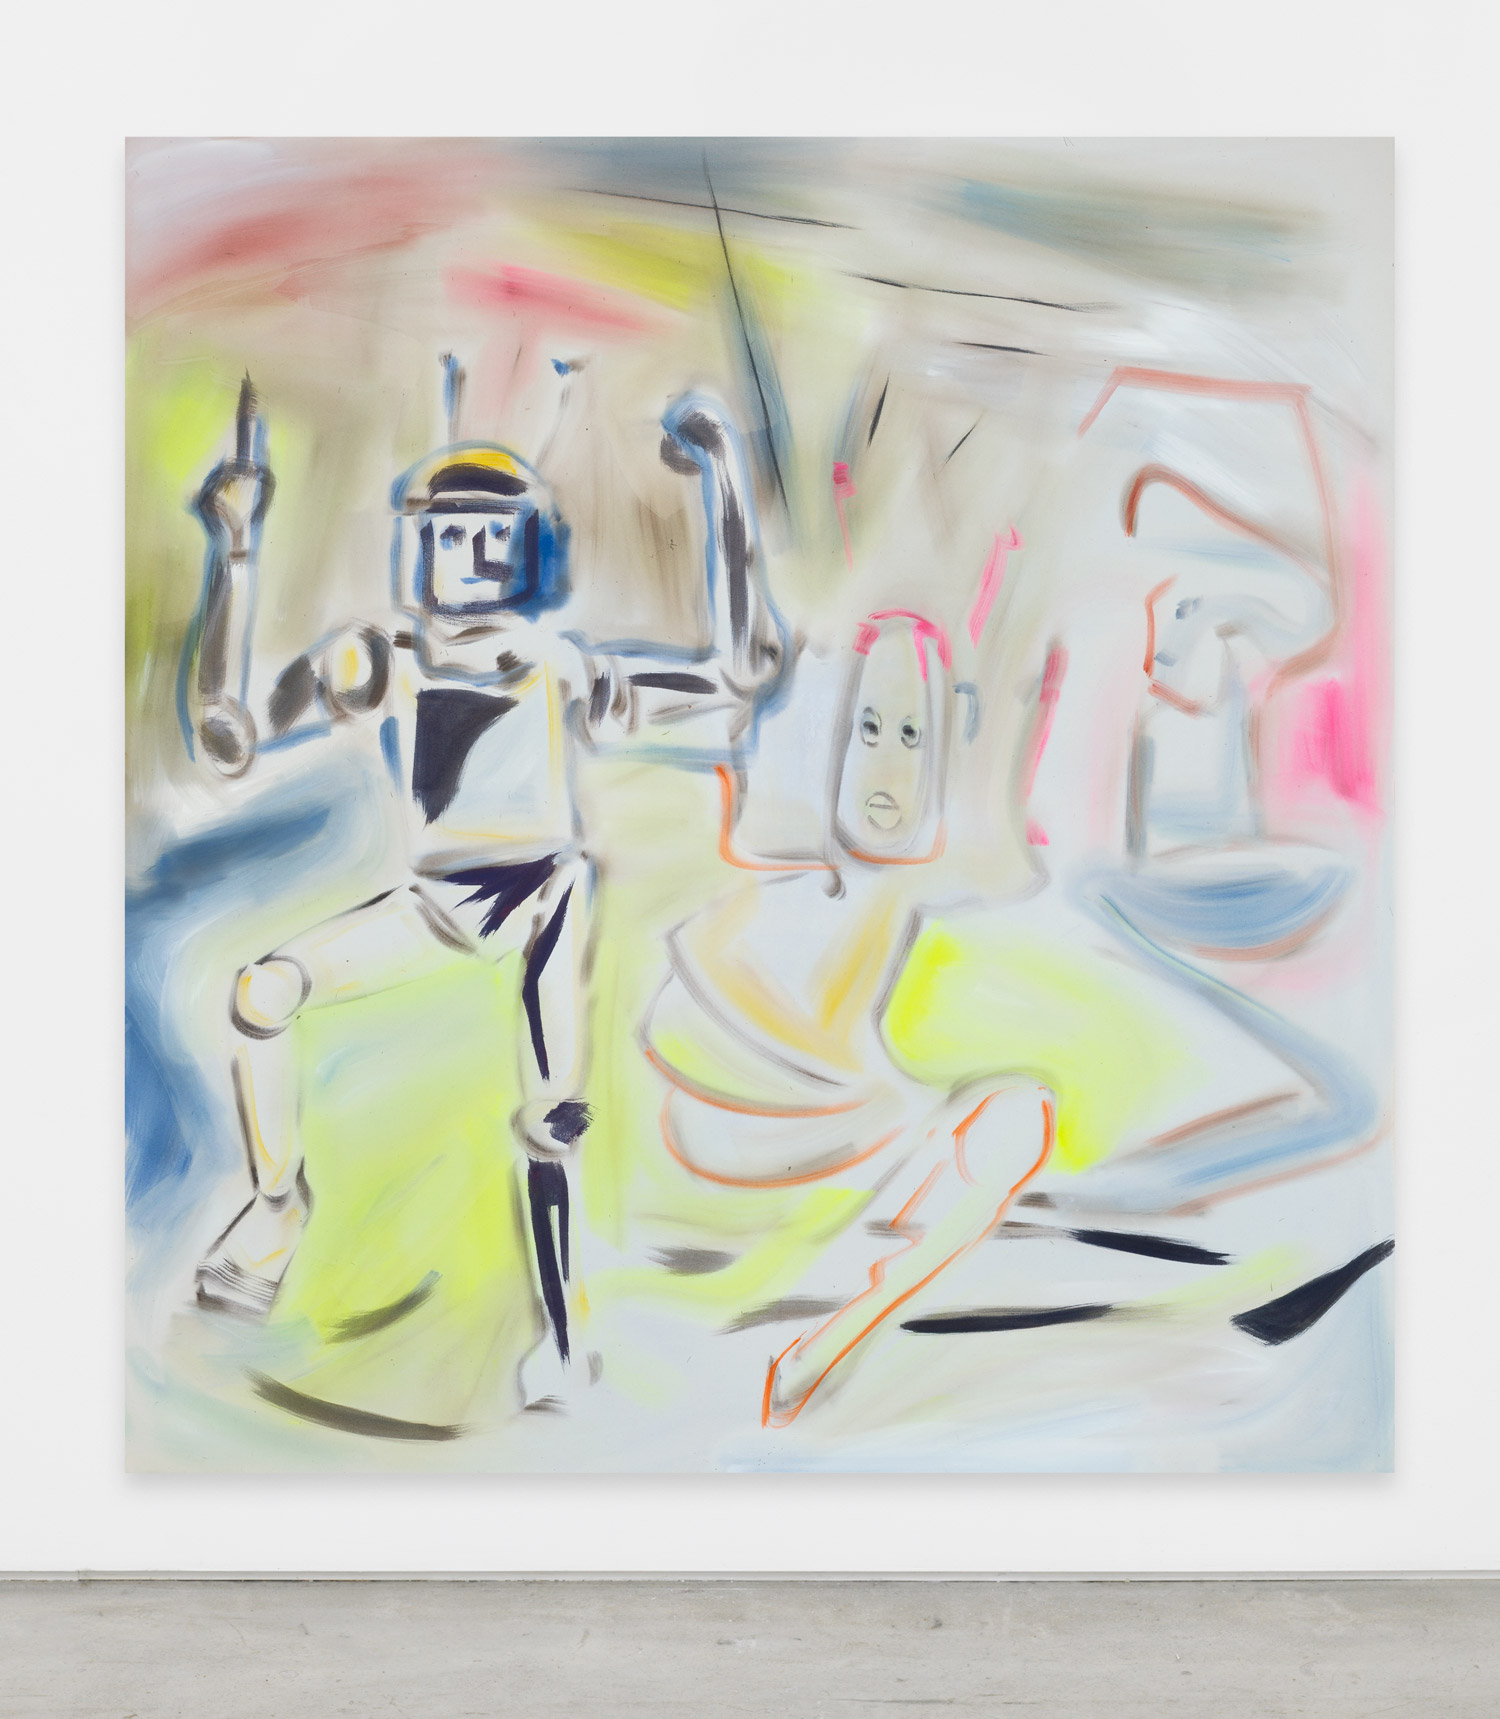 Sophie von Hellermann, Future Disco, 2018, acrylic on canvas, 78.74h x 74.80w in.